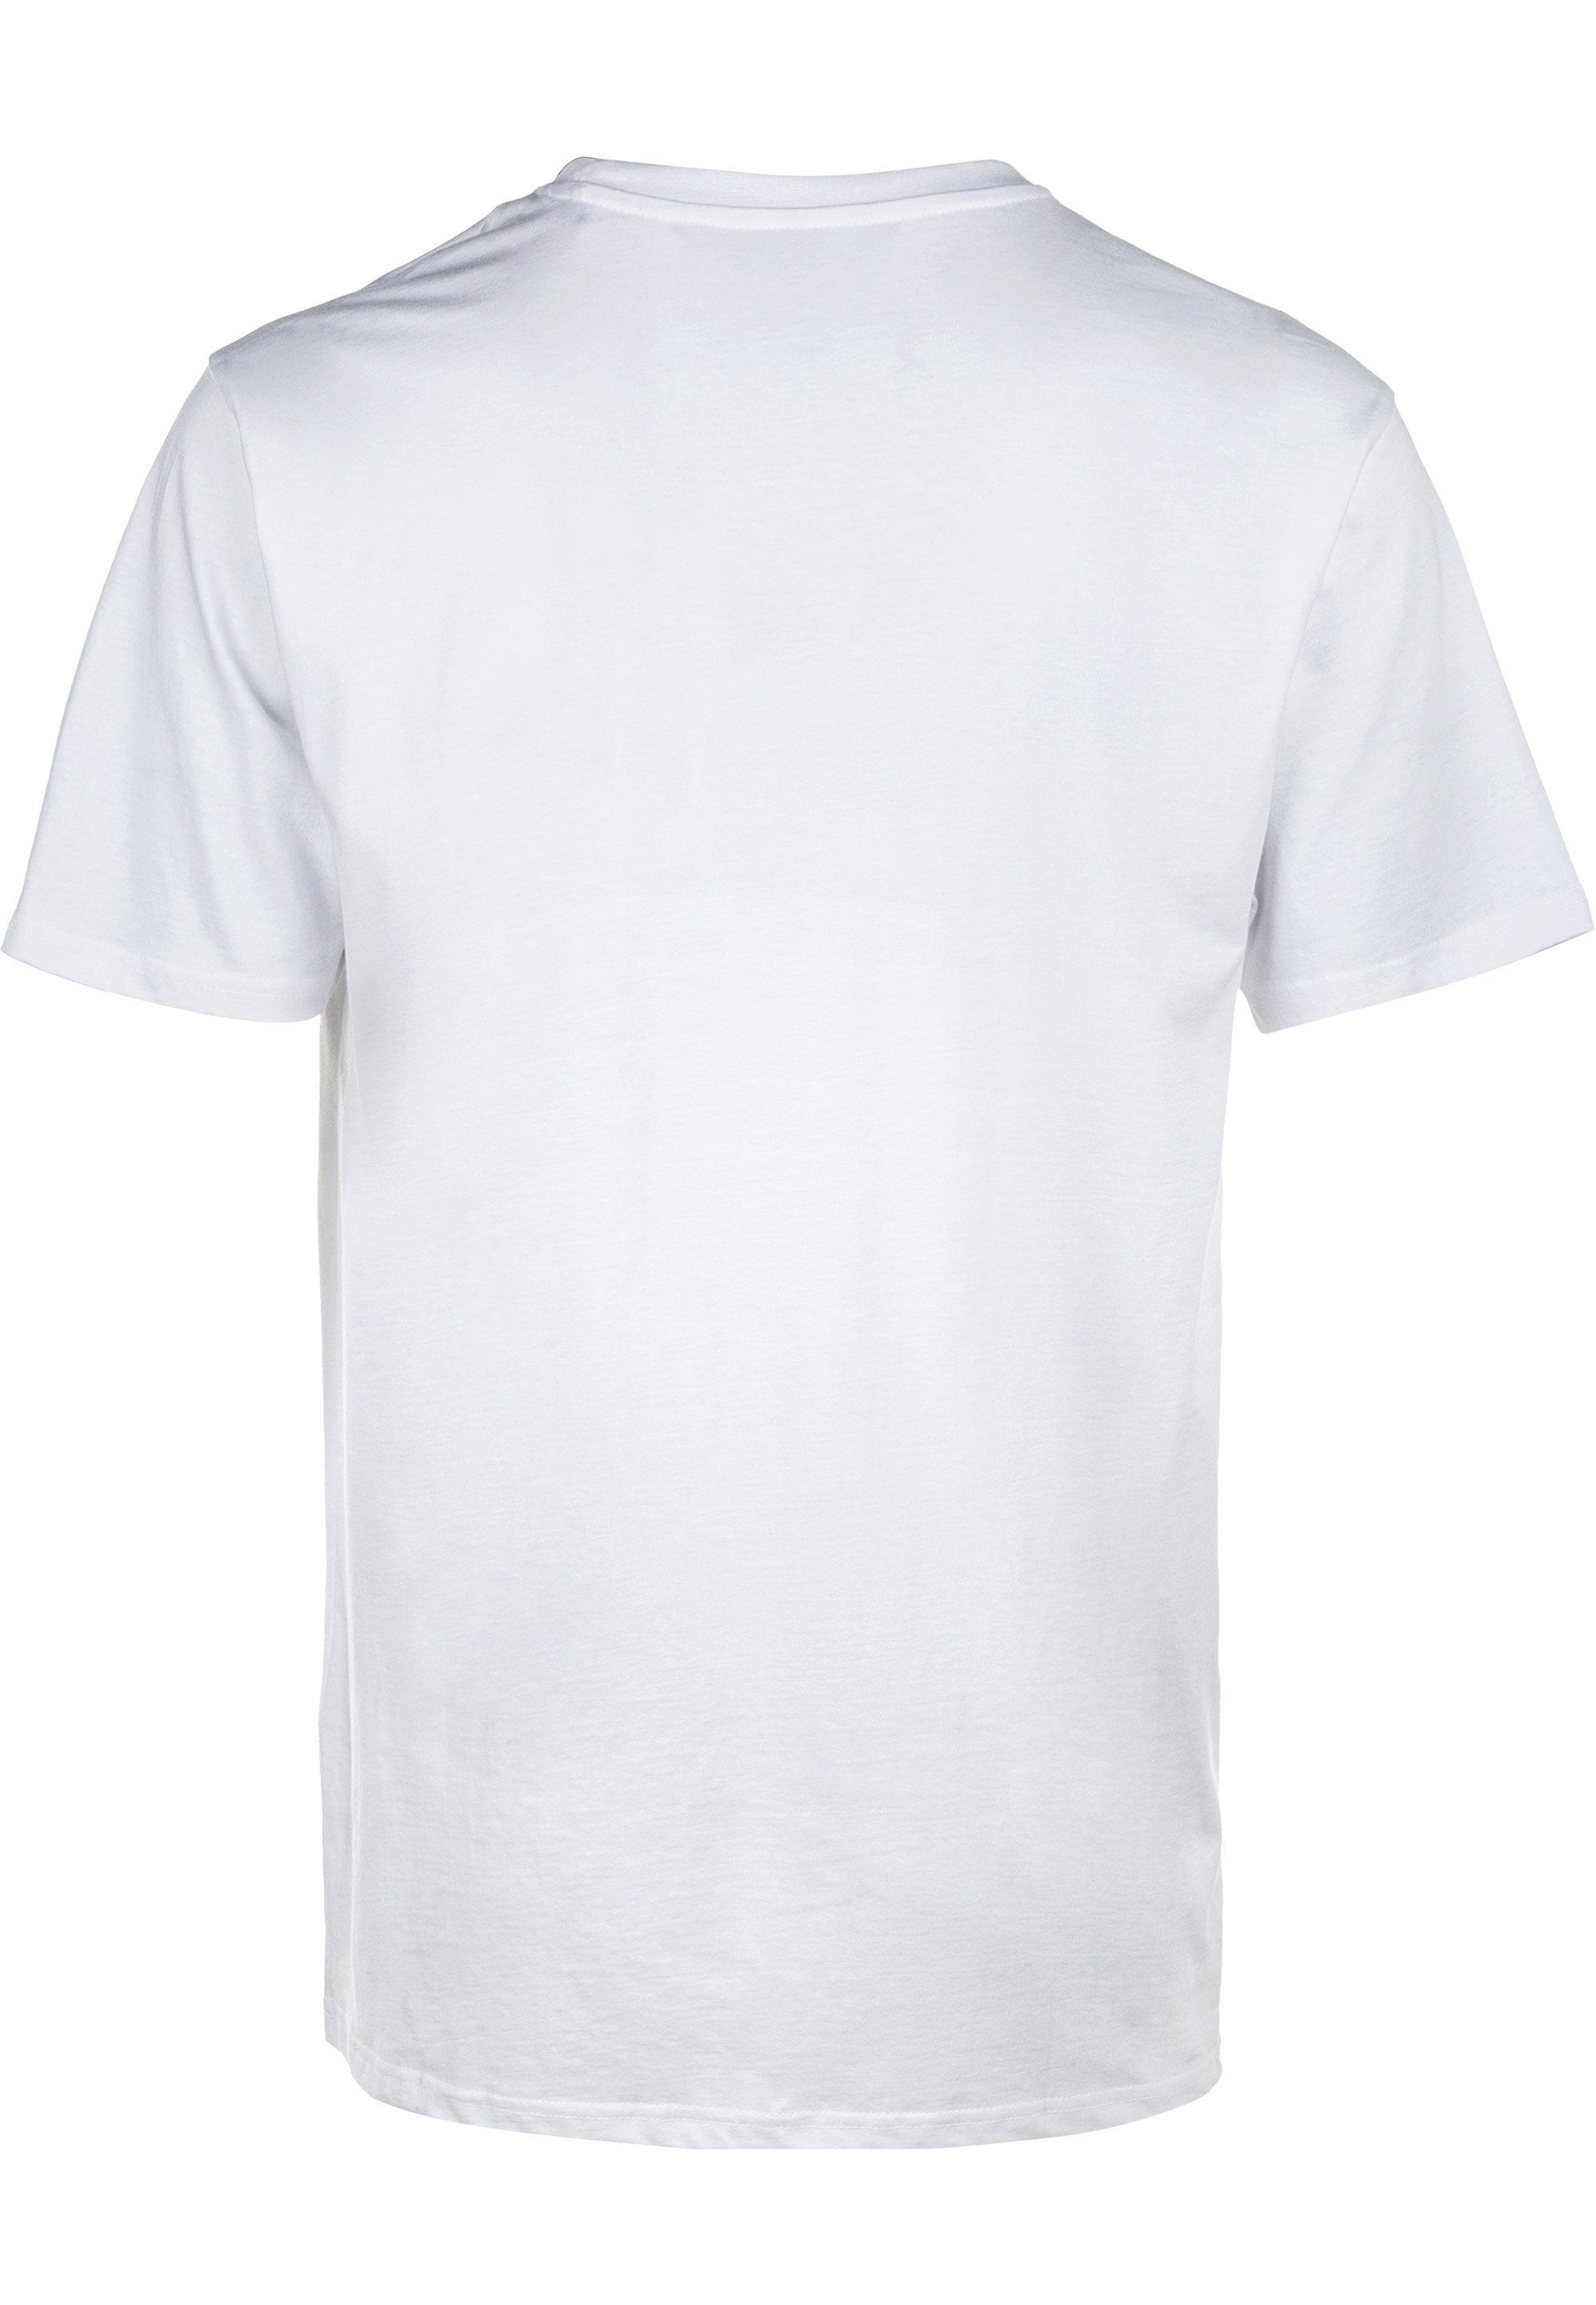 reiner CRUZ aus Highmore Baumwolle T-Shirt weiß